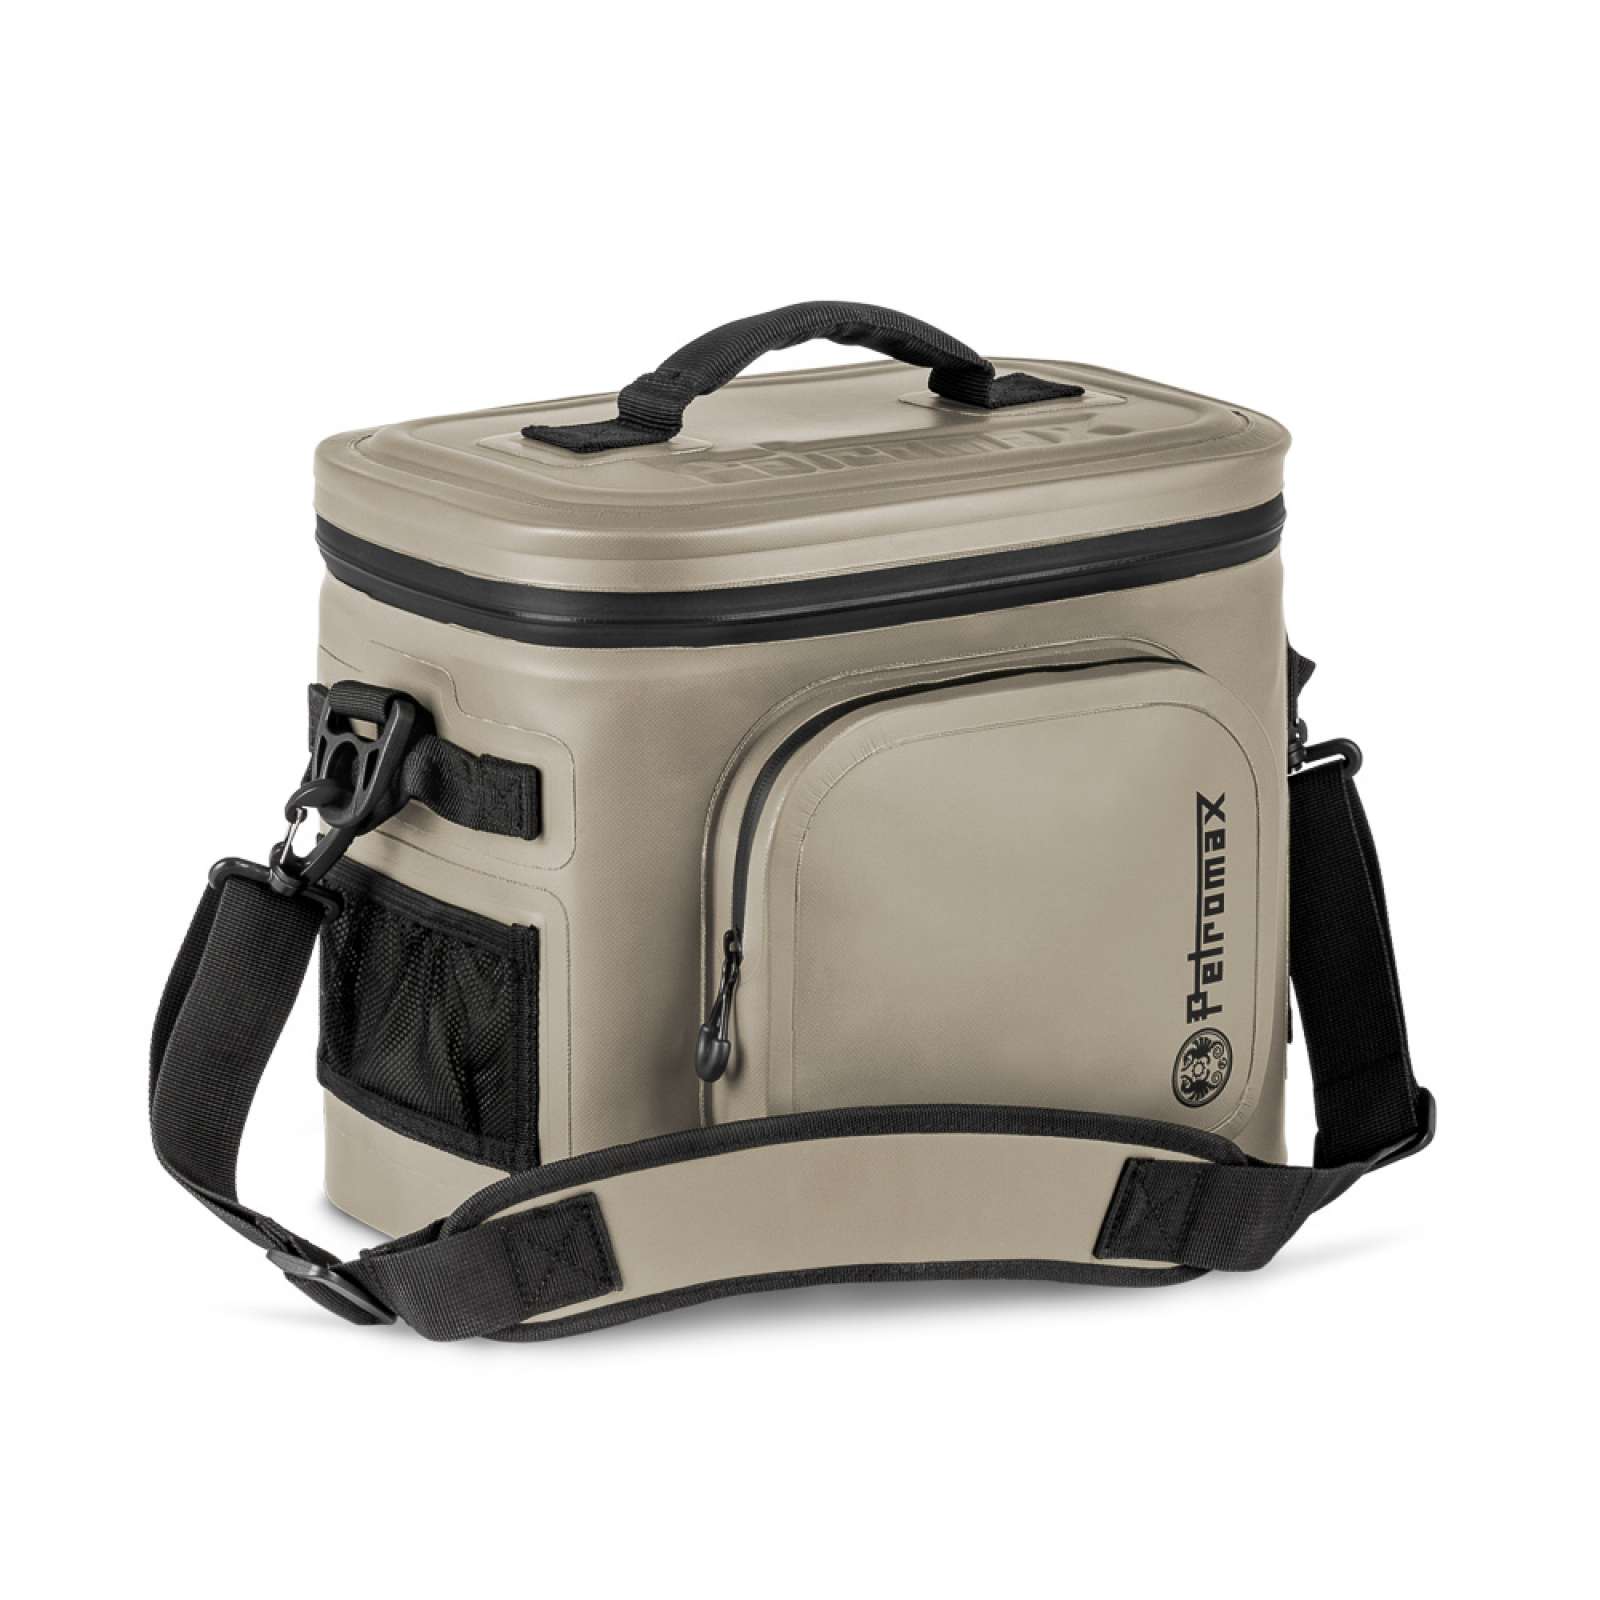 Petromax Kühltasche 8 Liter Sandfarben für Camping, Angeln und Picknick / Stromunabhängig